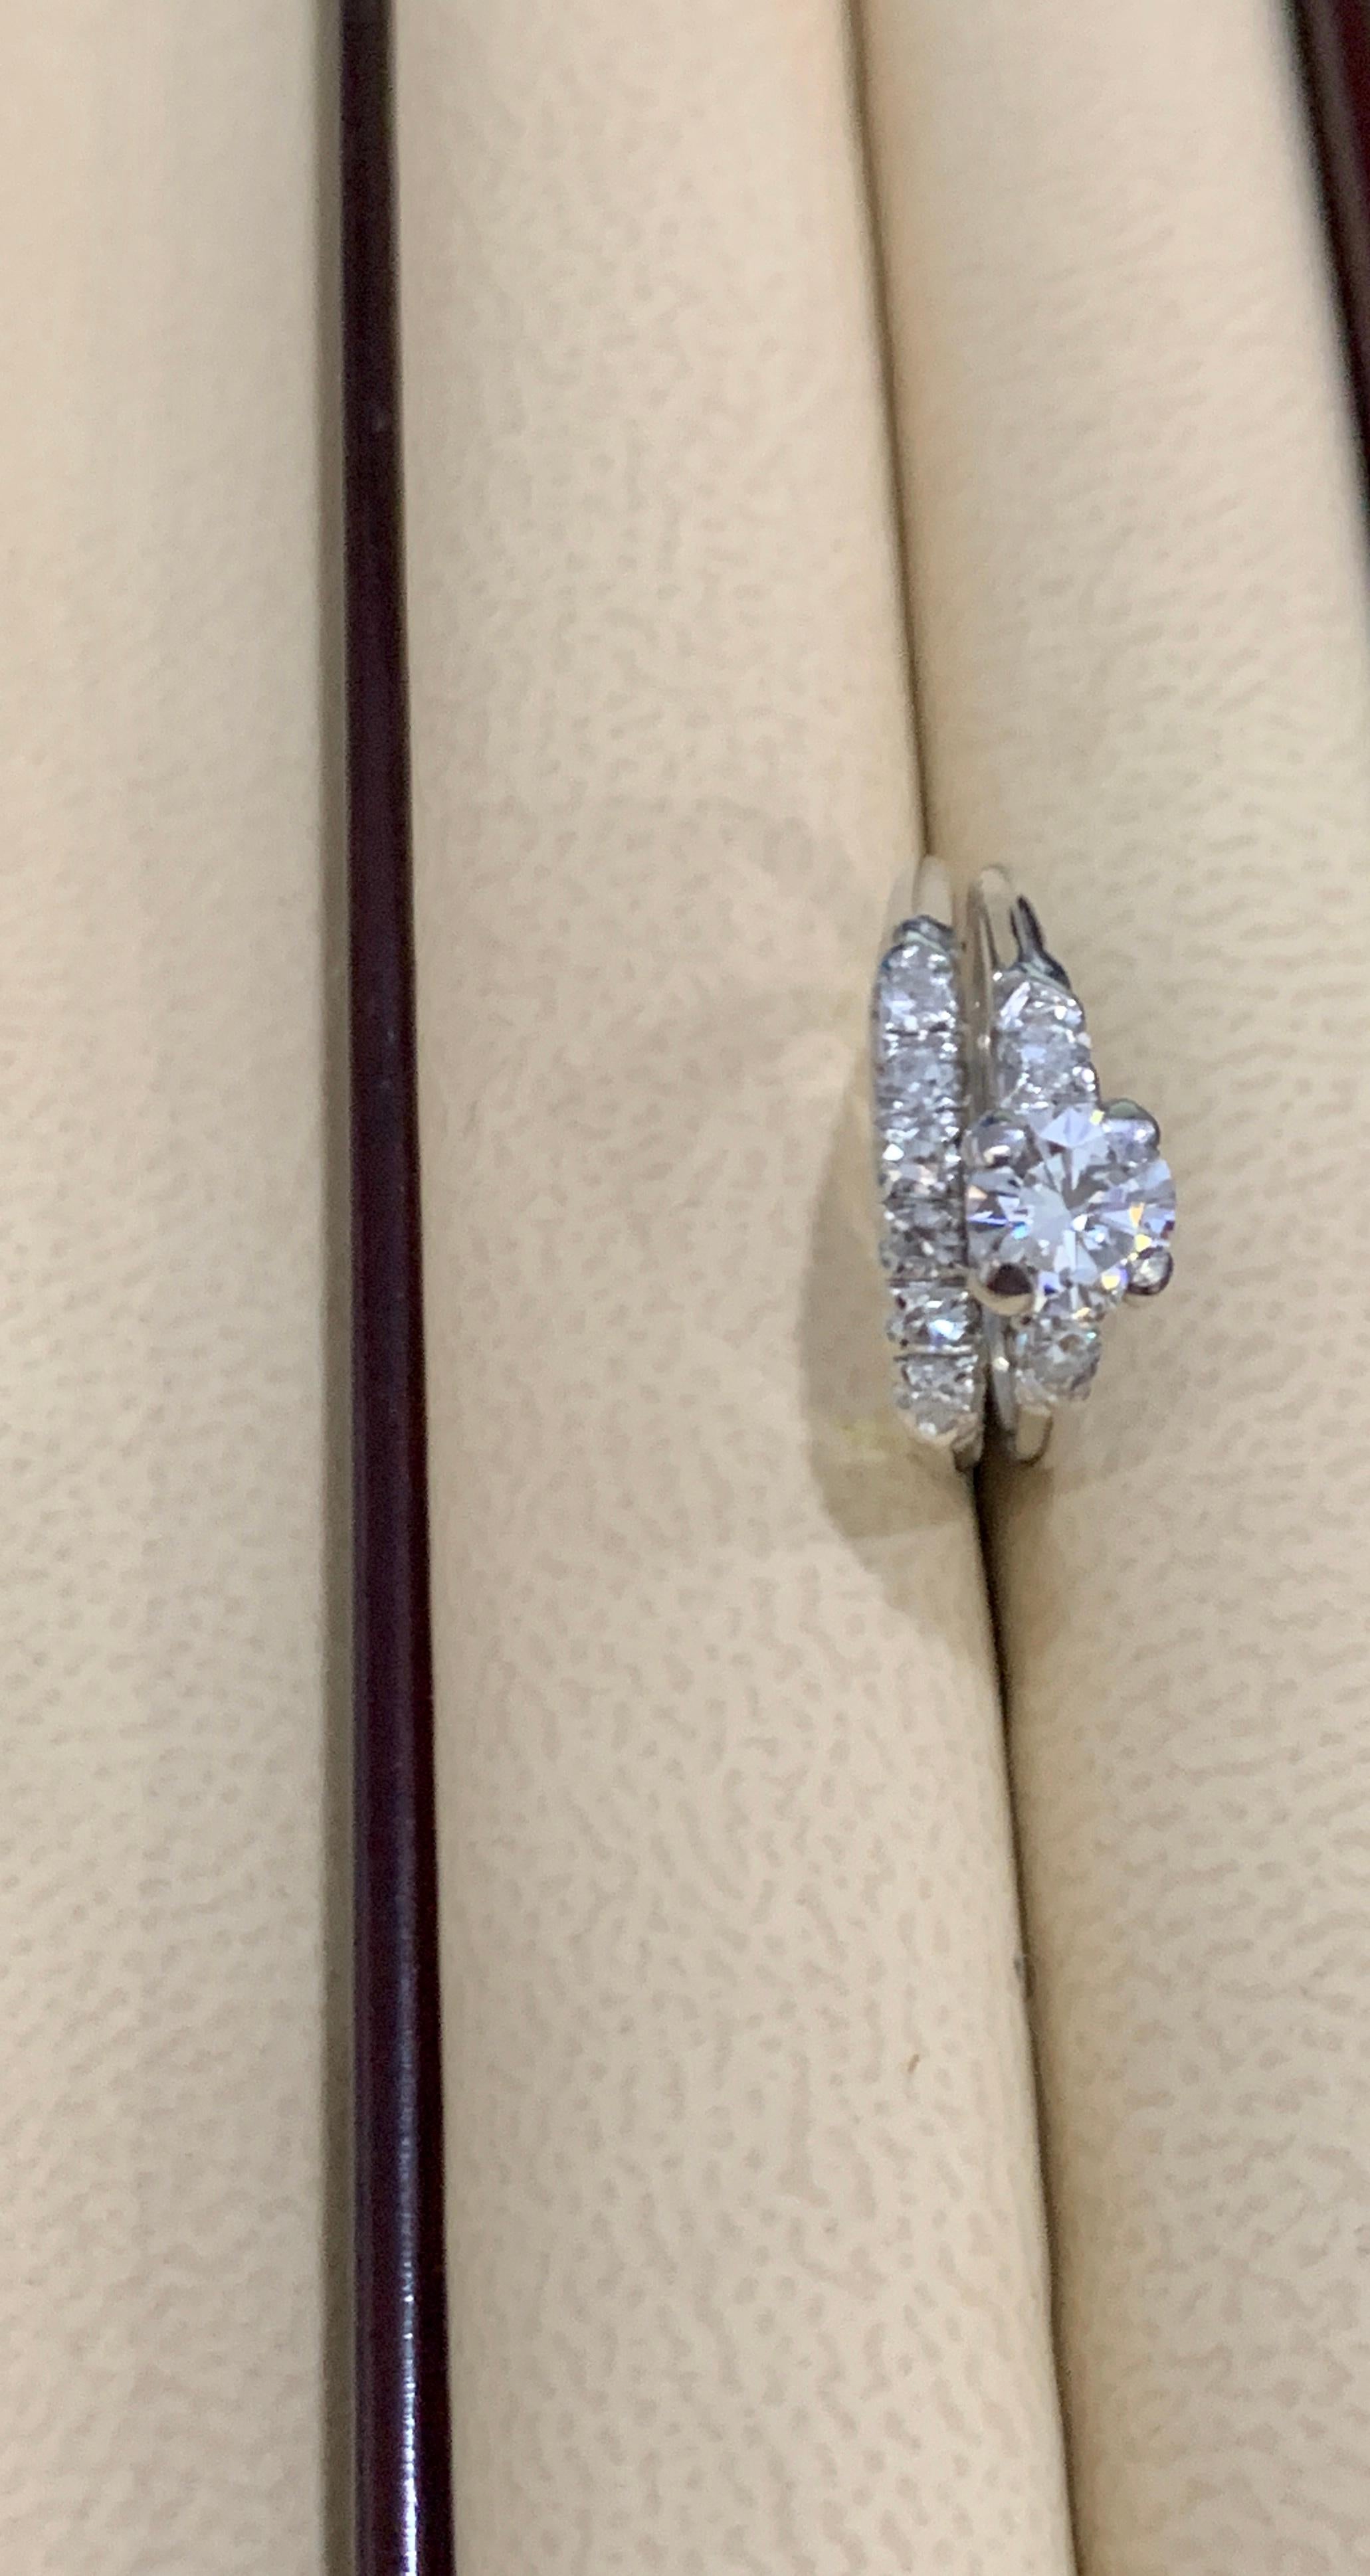 0.6 carat solitaire diamond ring